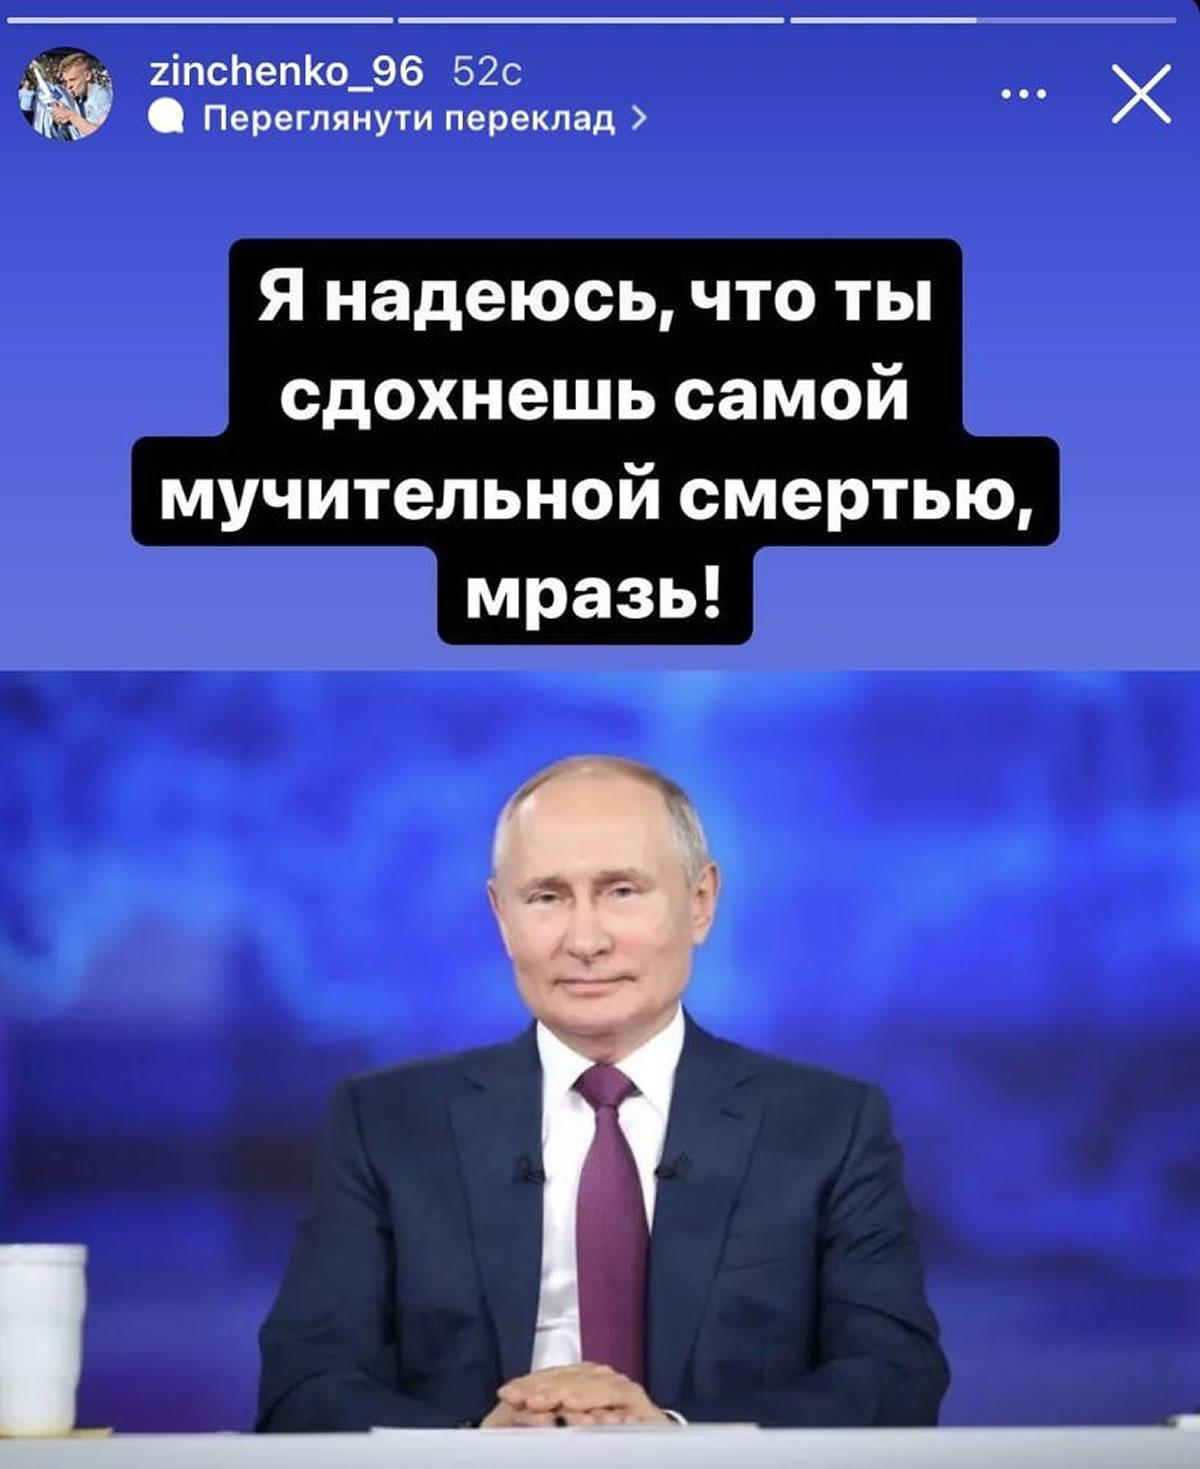 Esta es la publicación de Oleksandr Zinchenko contra Vladimir Putin.